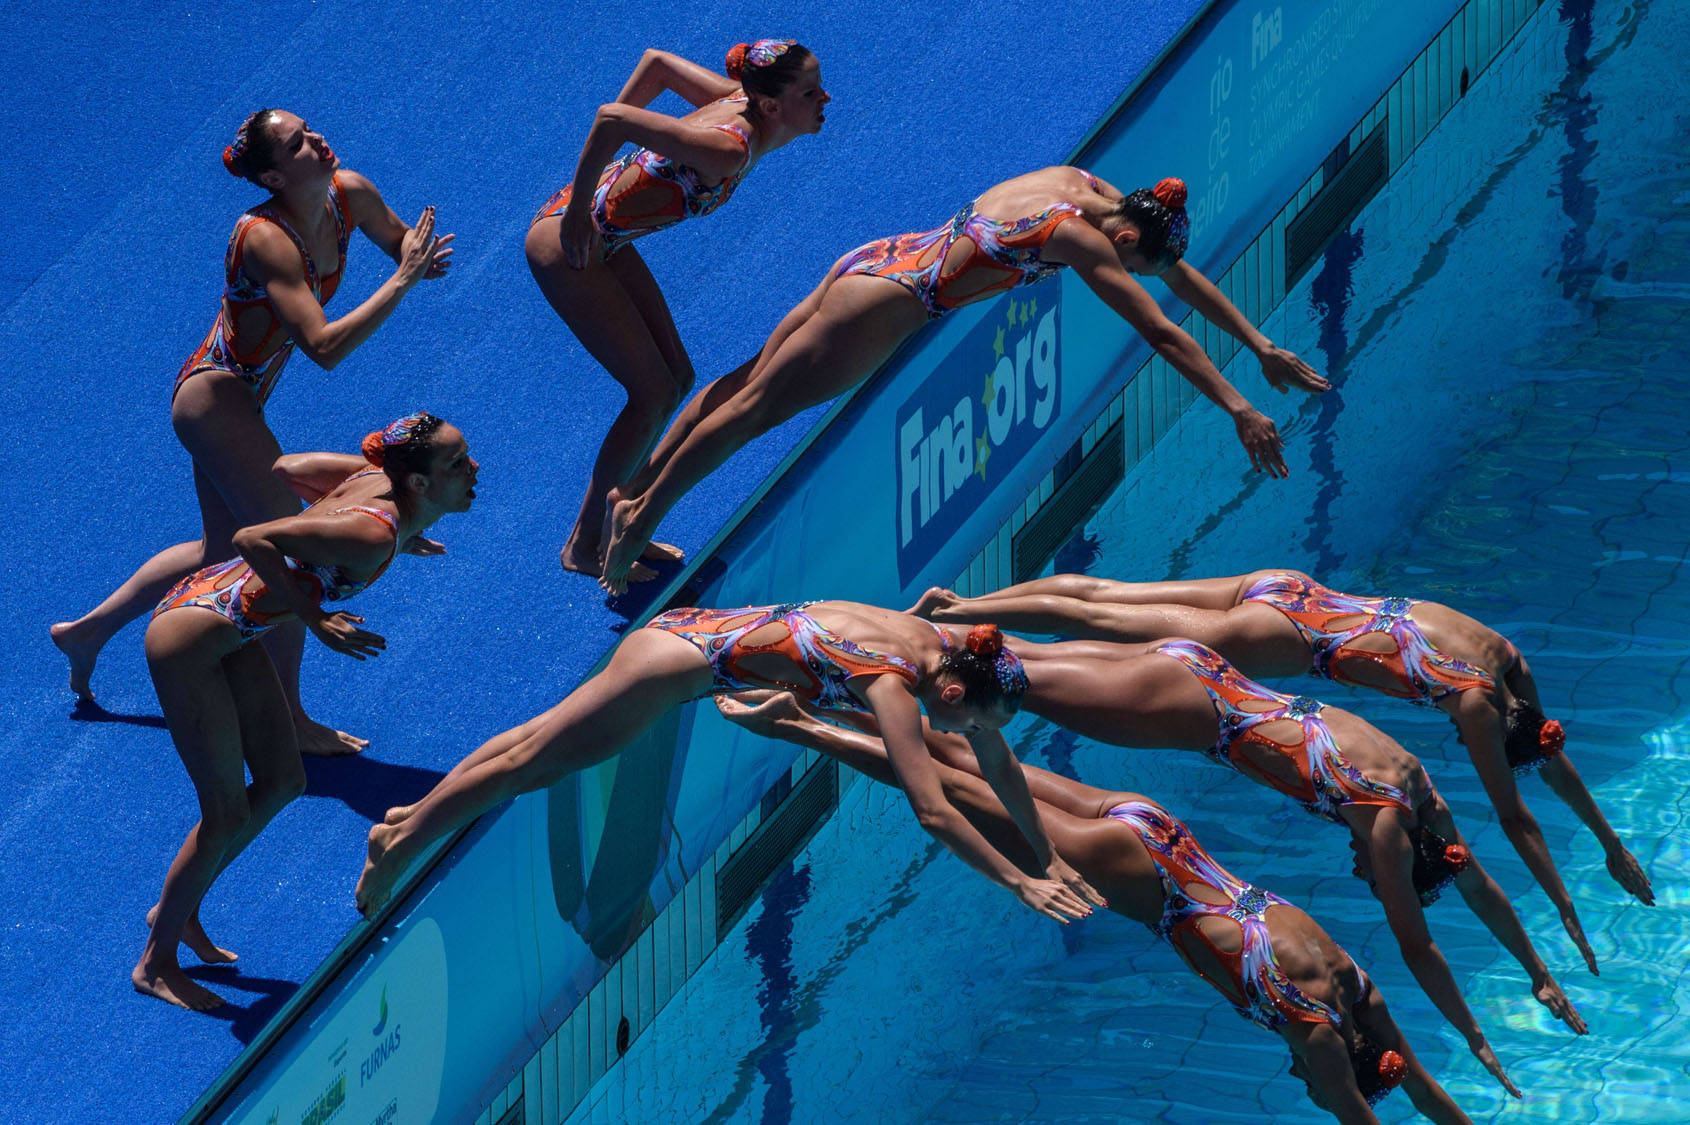 Synchronschwimmenspringt In Den Pool. Wallpaper